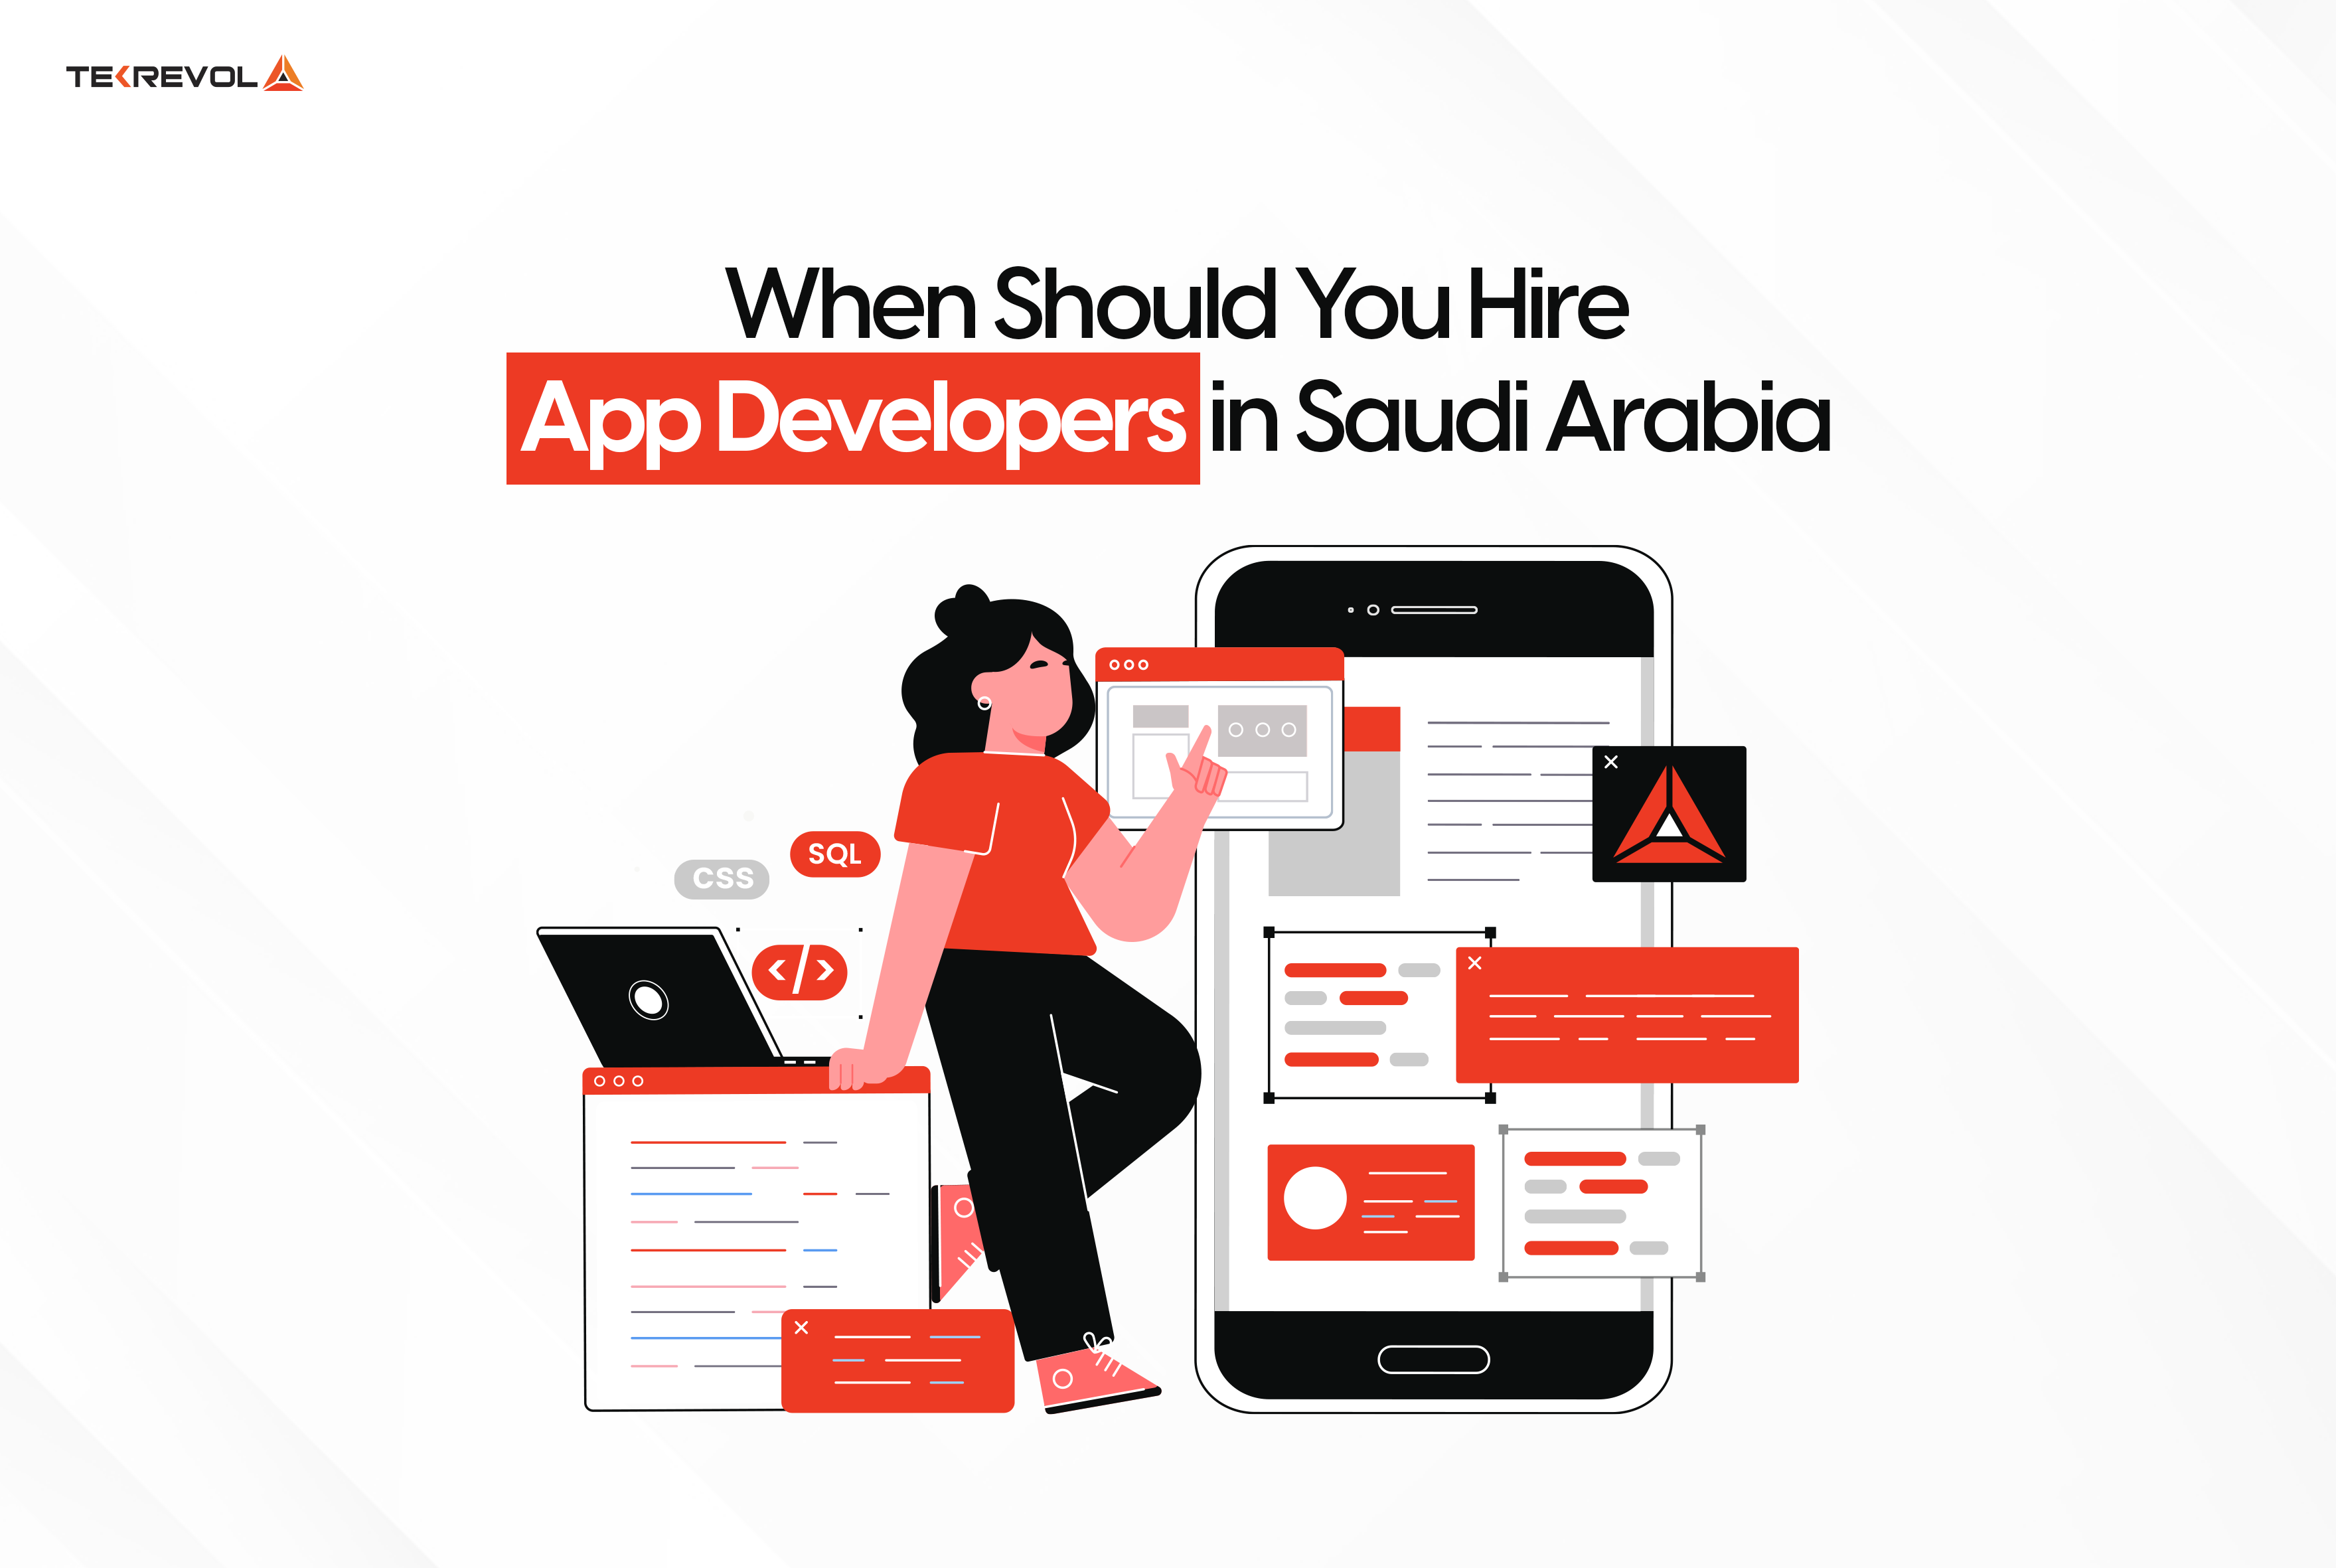 Hiring App Developers in Saudi Arabia